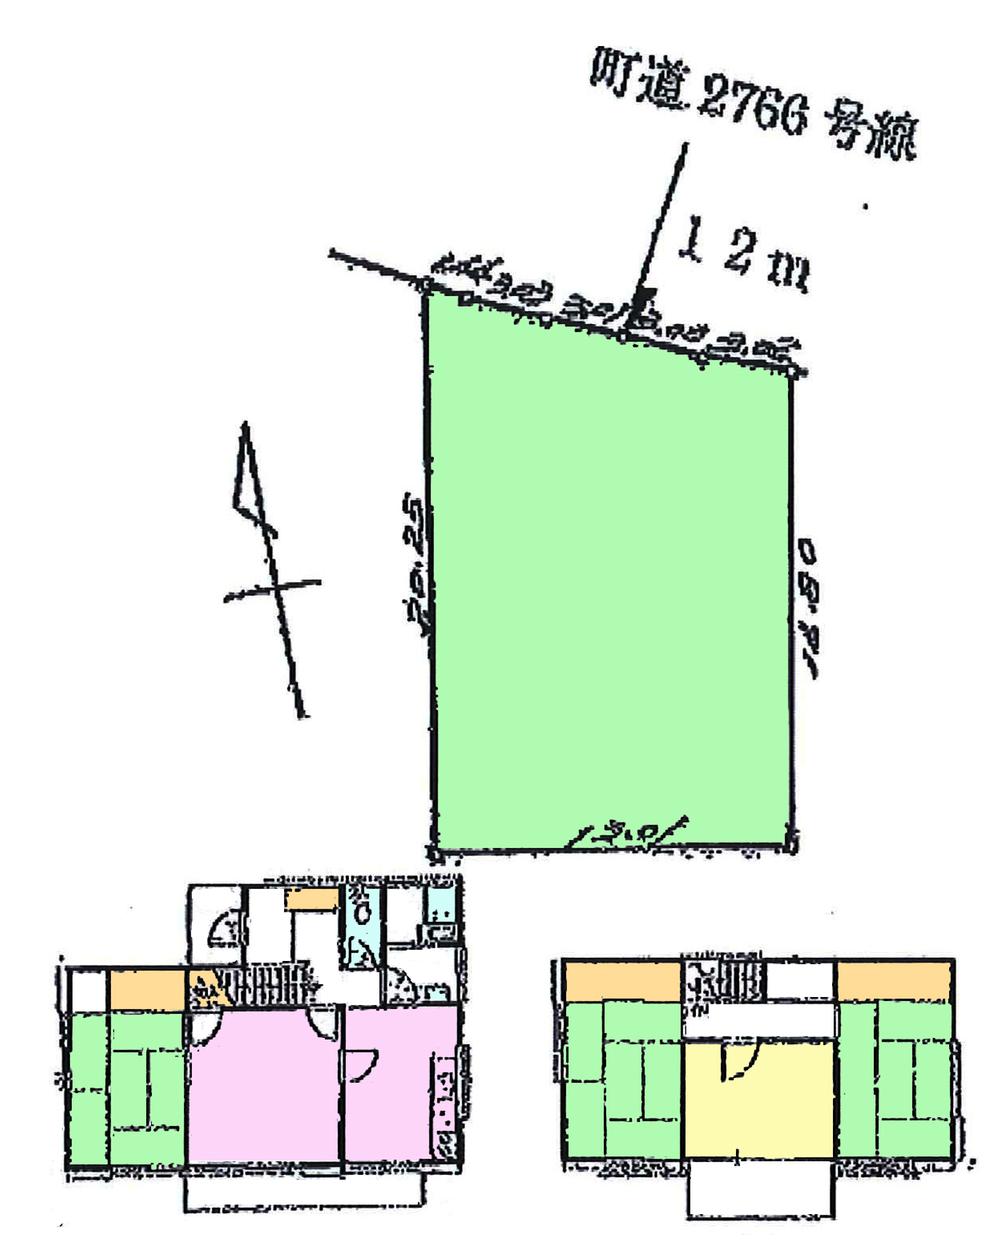 Floor plan. 9.3 million yen, 4LDK, Land area 239.59 sq m , Building area 92.91 sq m